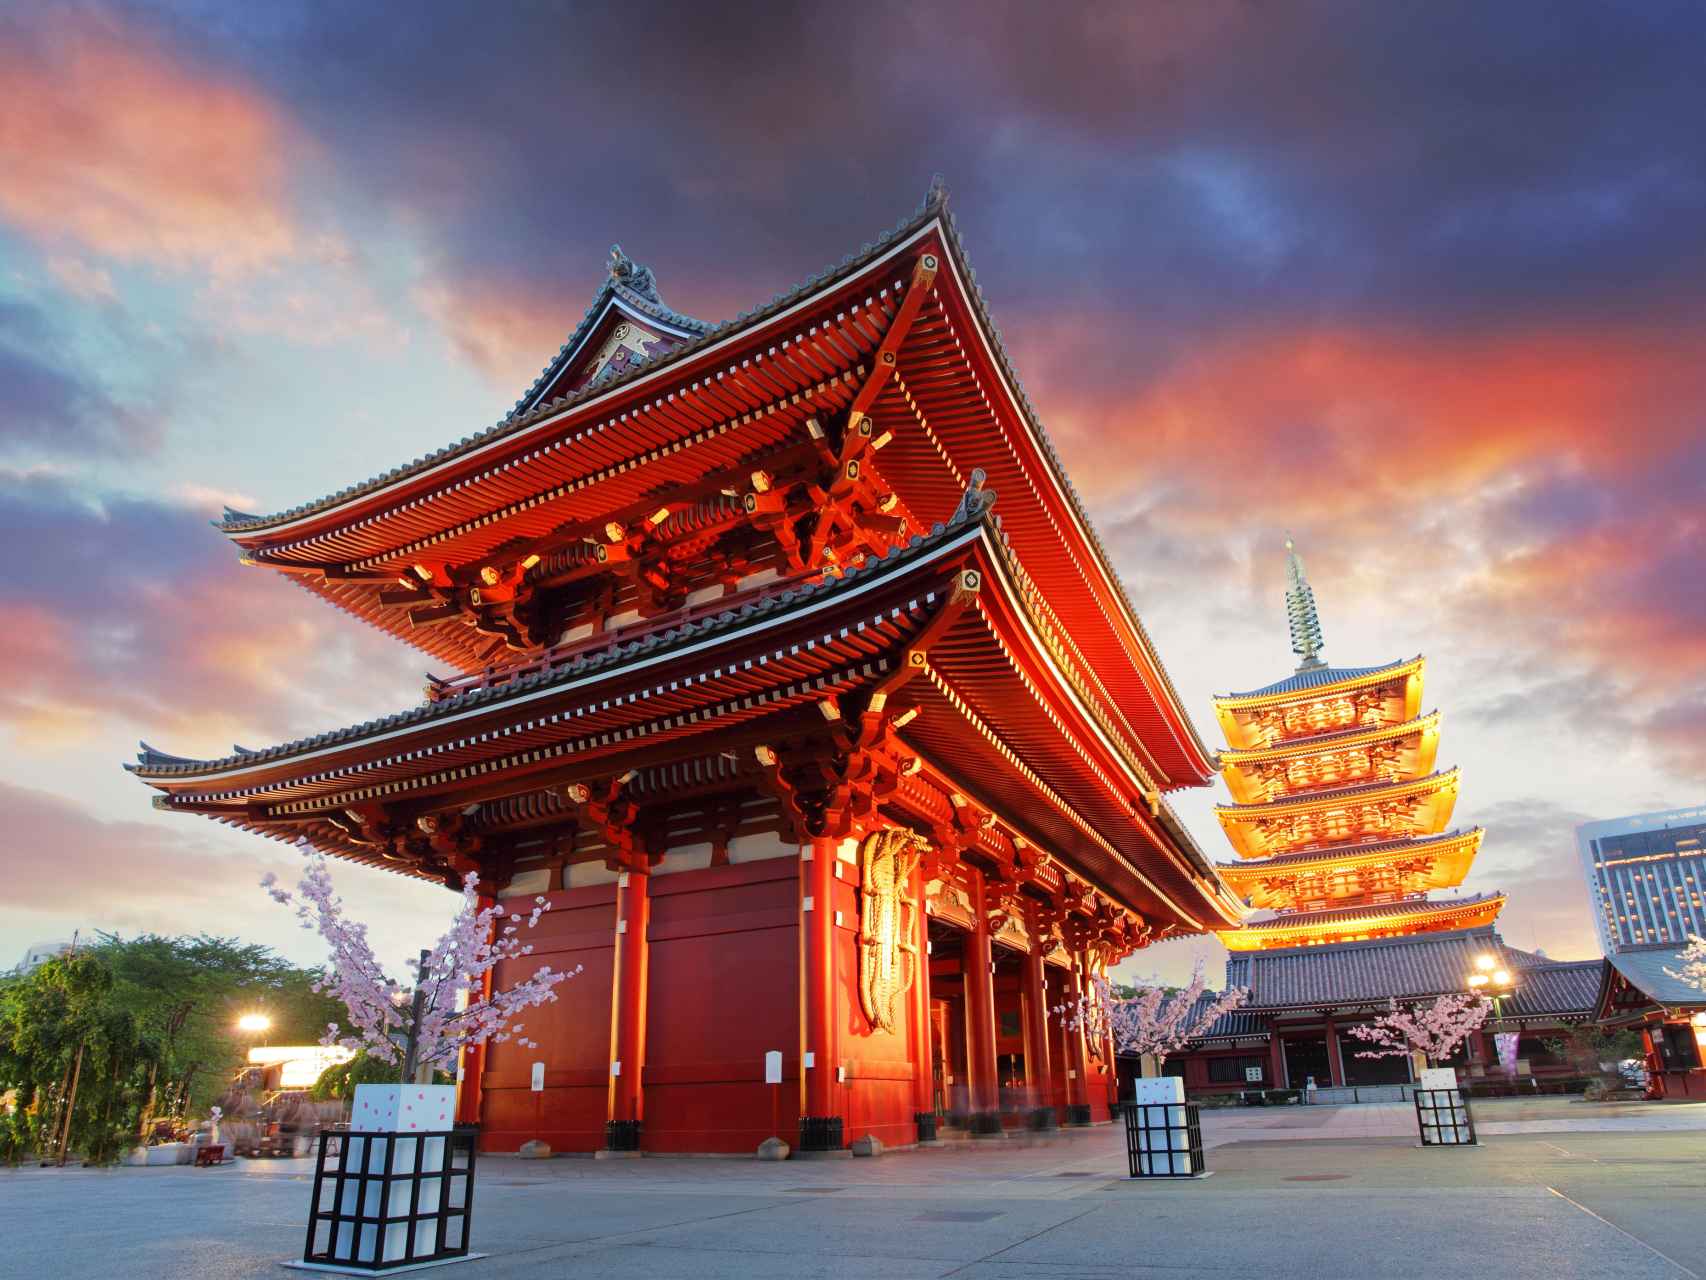 El Templo de Asakusa Kannon es el templo budista más antiguo de Tokio.